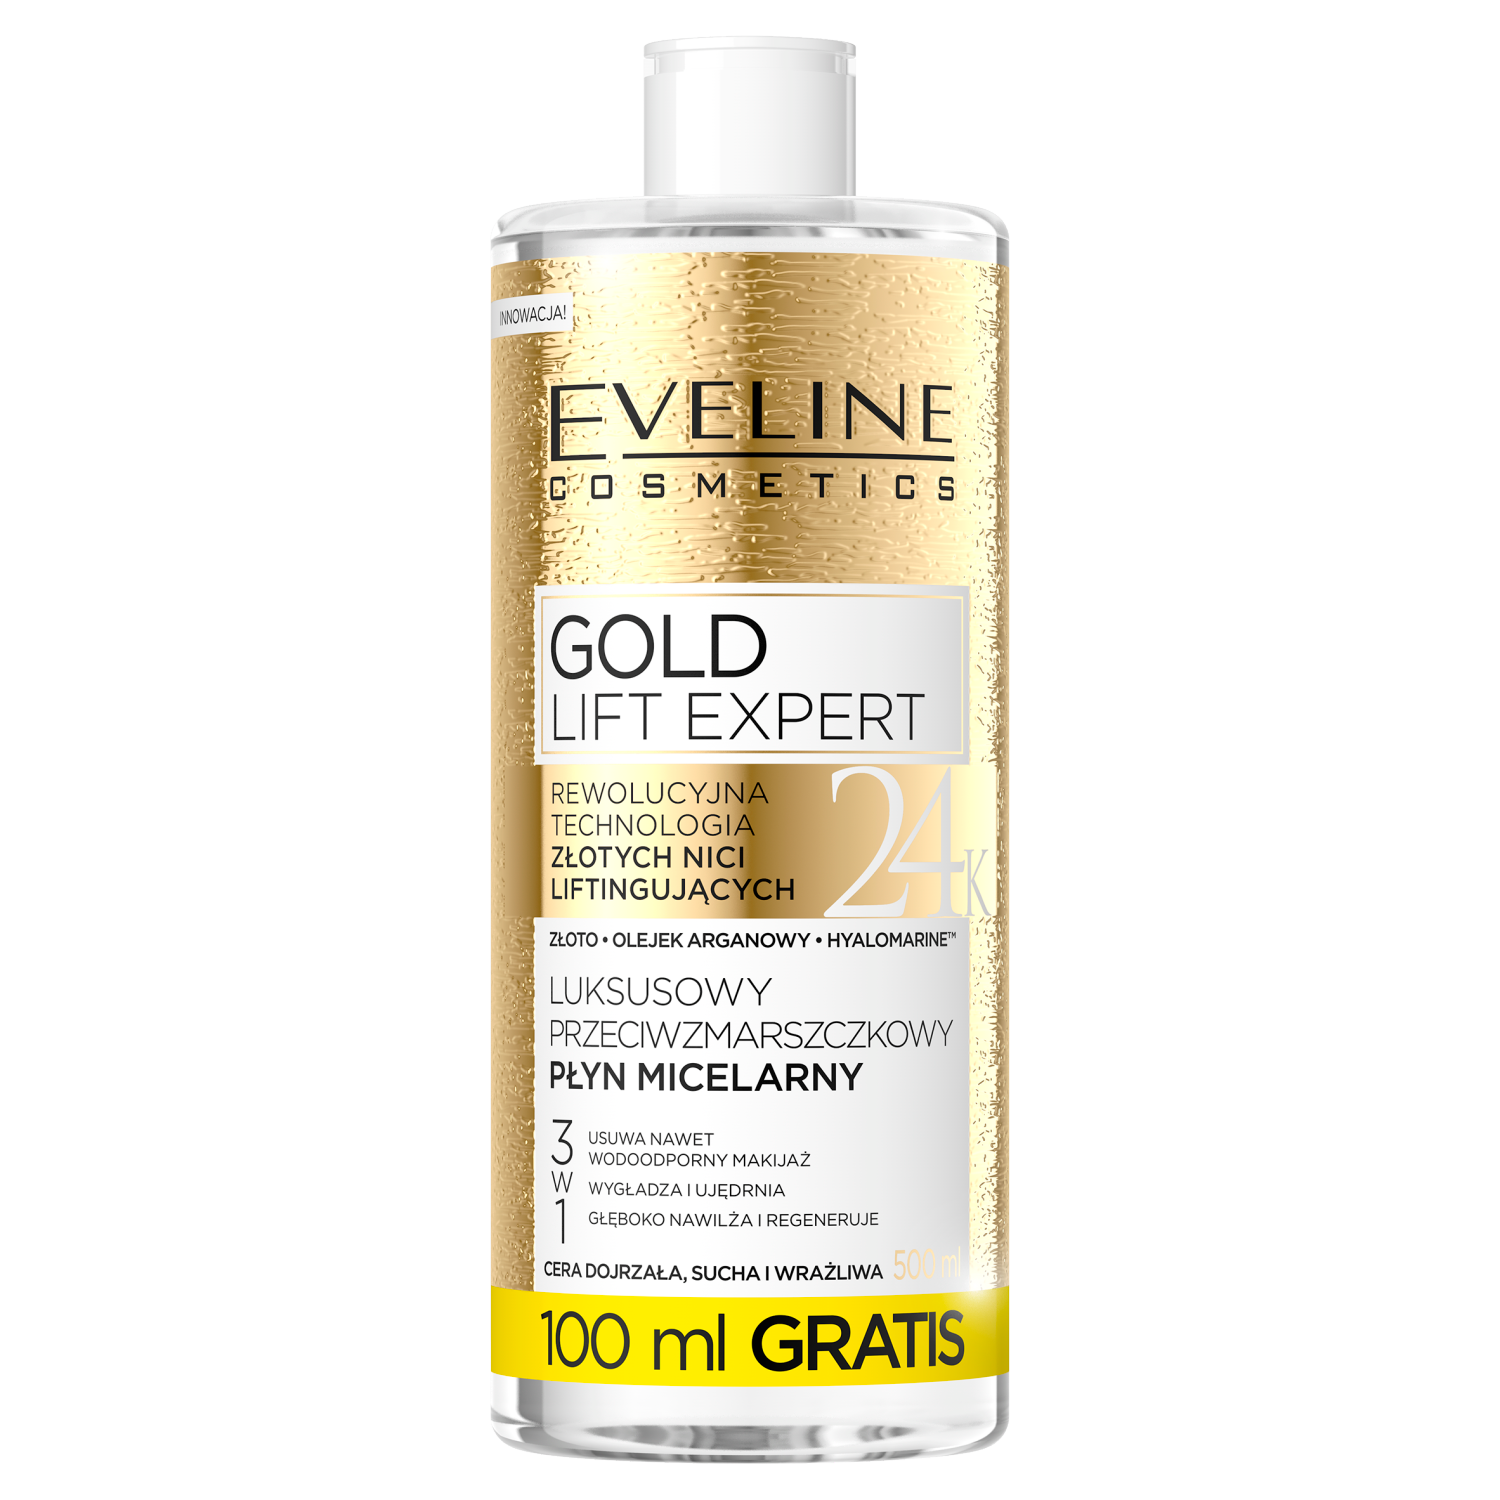 Gold lift. Eveline Cosmetics золотой крем эксклюзивный против морщин для контура глаз Gold Lift Expert.